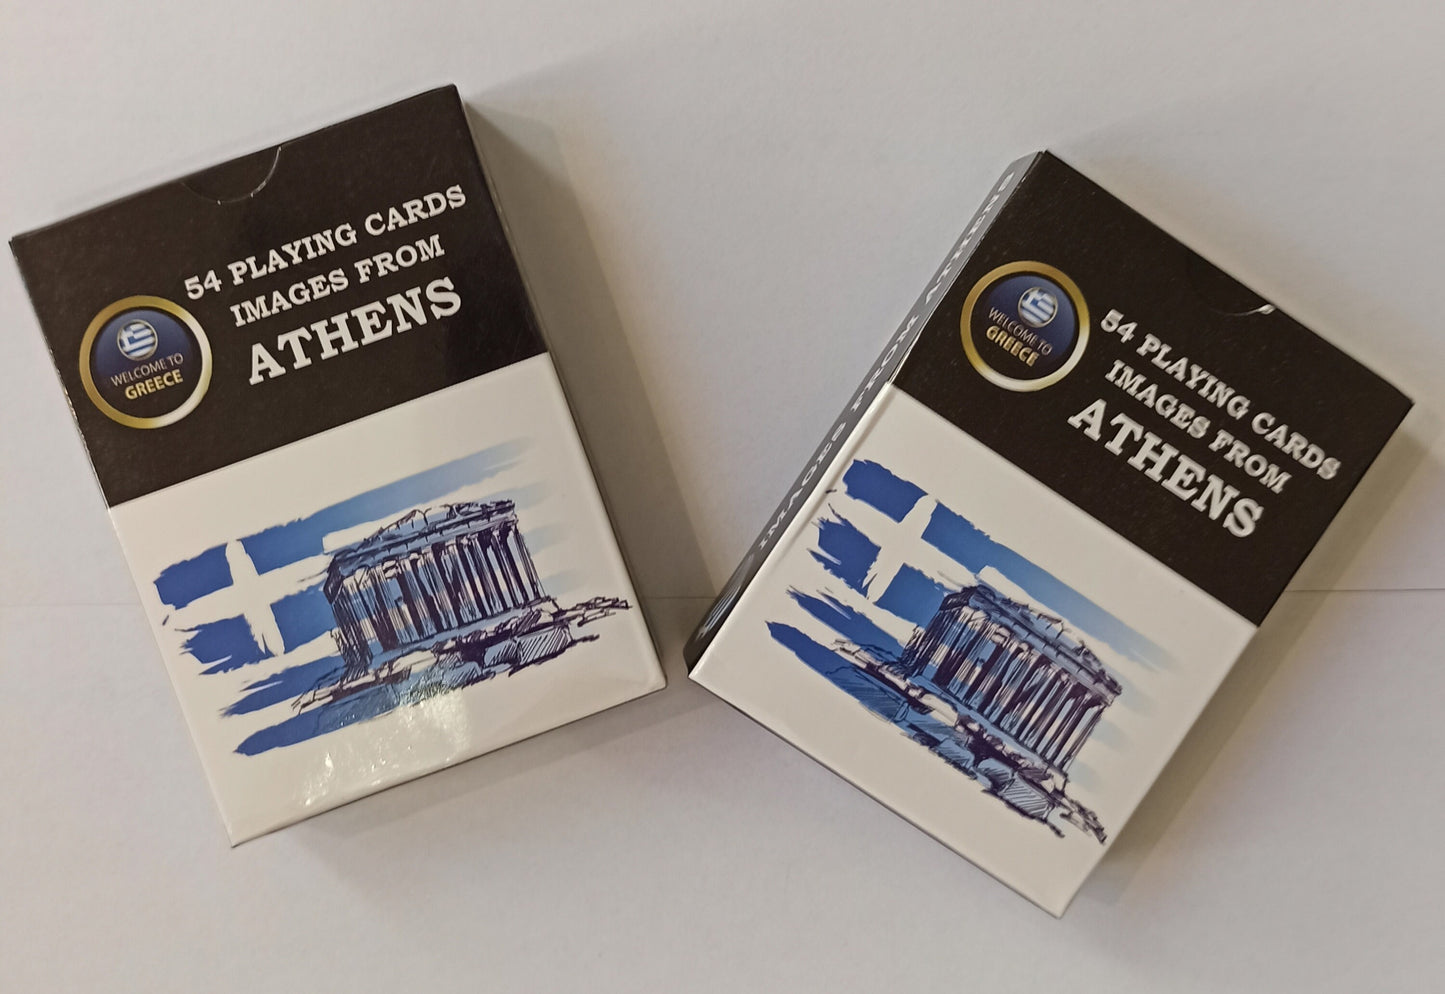 2 Decks with various photos of Athens  - Greece - Canasta, Bridge, Poker, Black Jack - Playing Cards